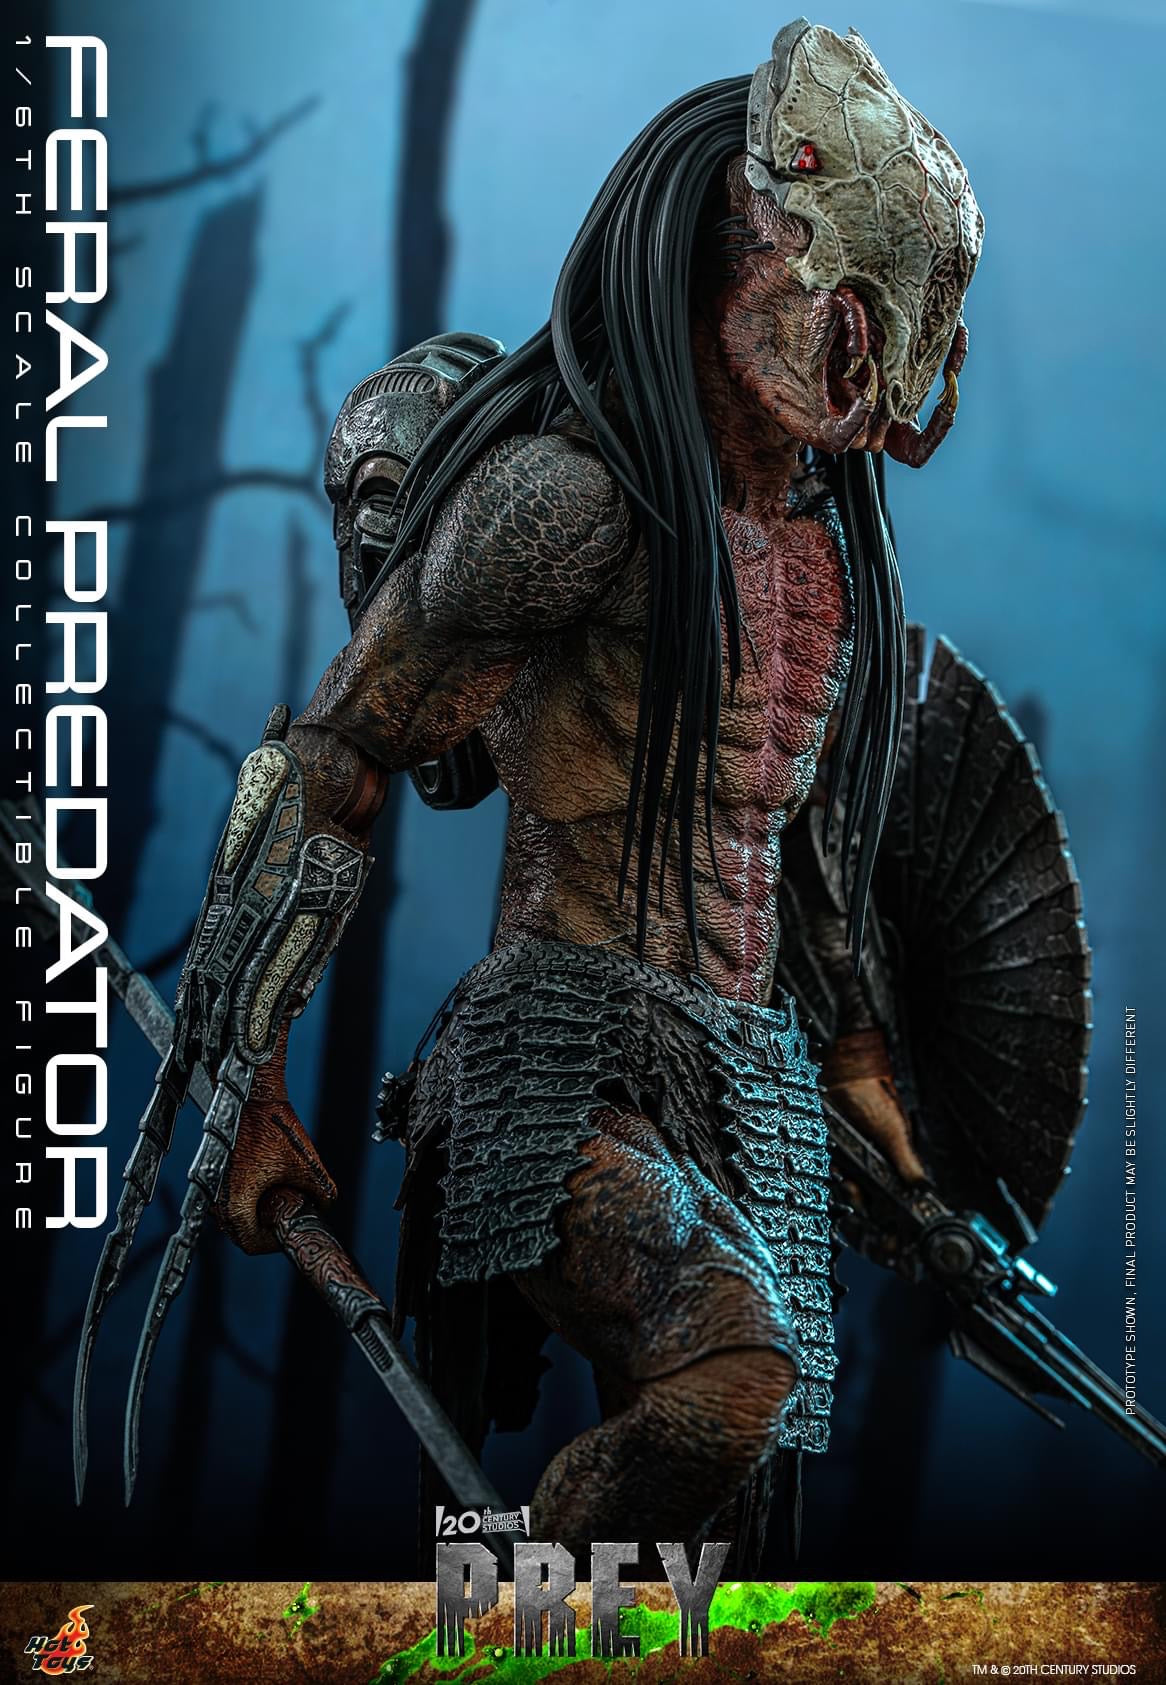 Preventa Figura Feral Predator - Prey marca Hot Toys TMS114 escala 1/6